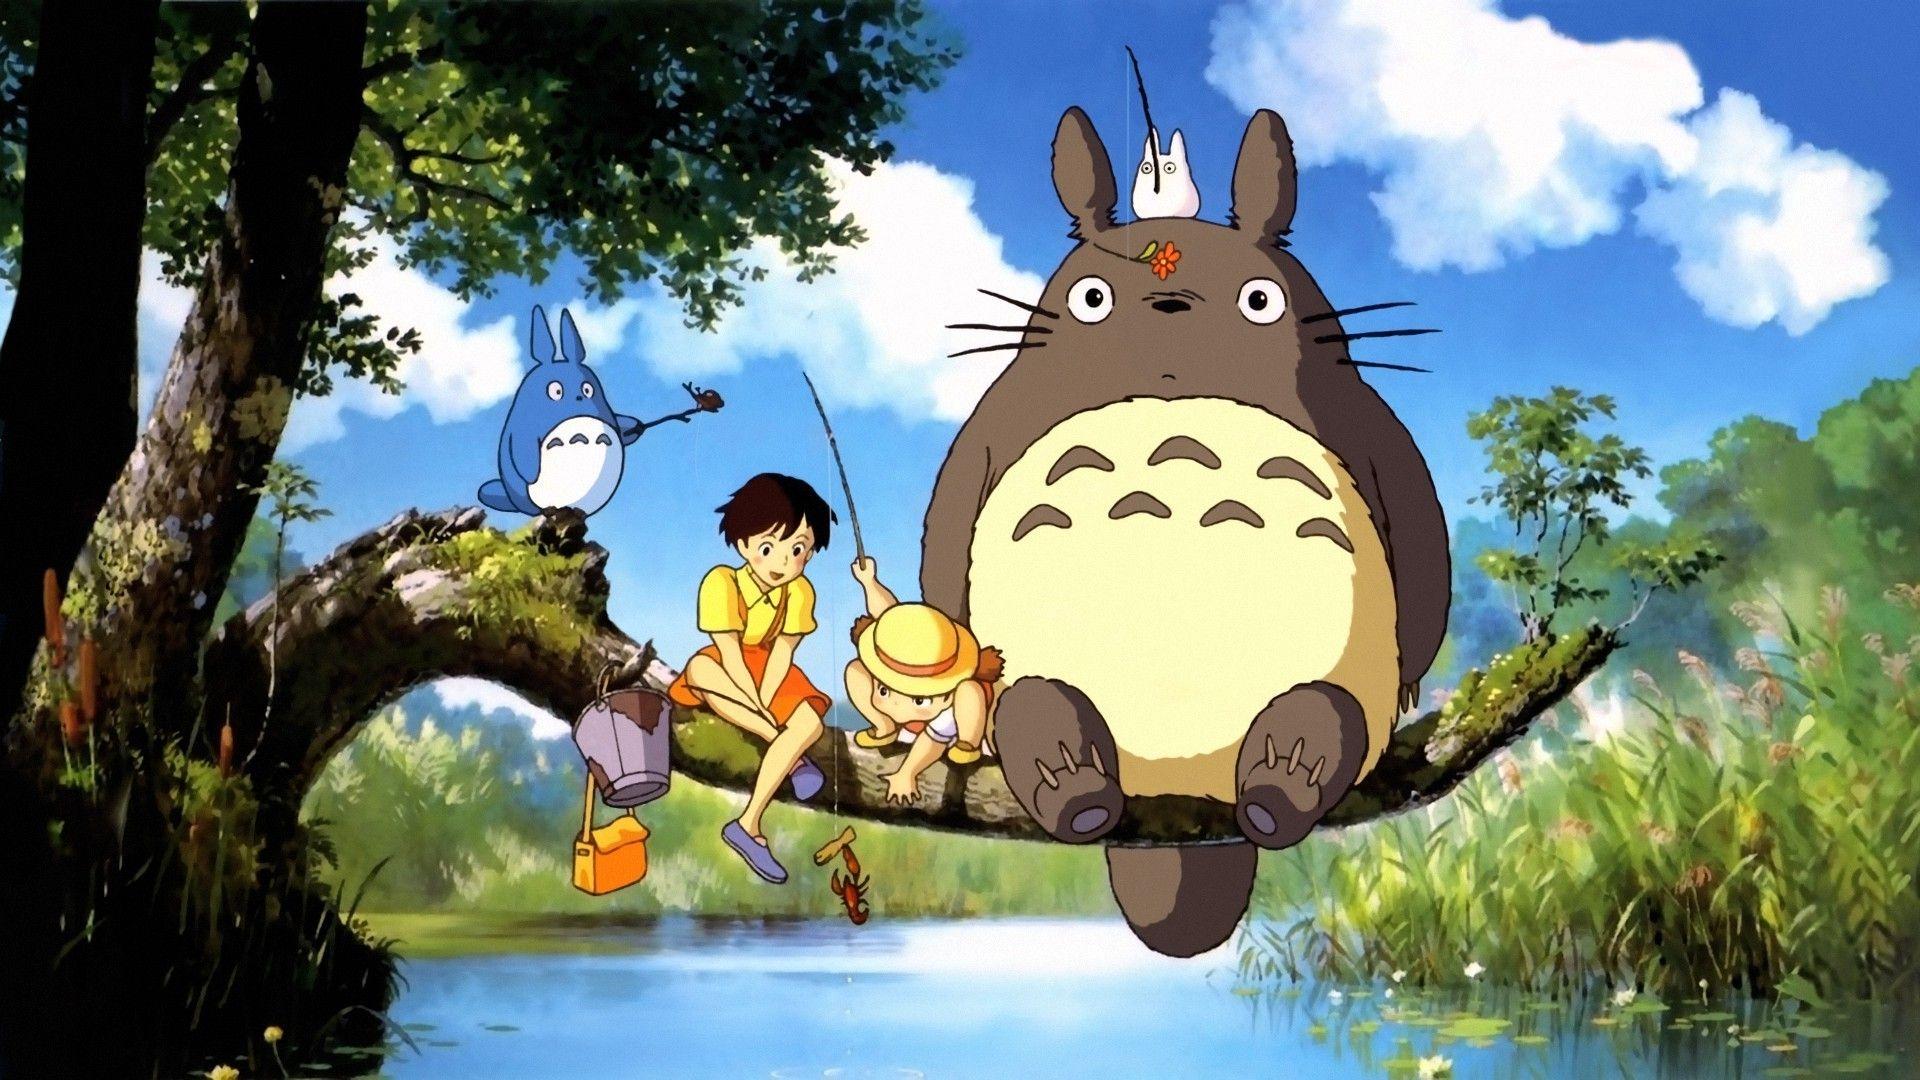 1920x1080 My Neighbor Totoro, Totoro, Studio Ghibli, Lâu đài di chuyển của hú